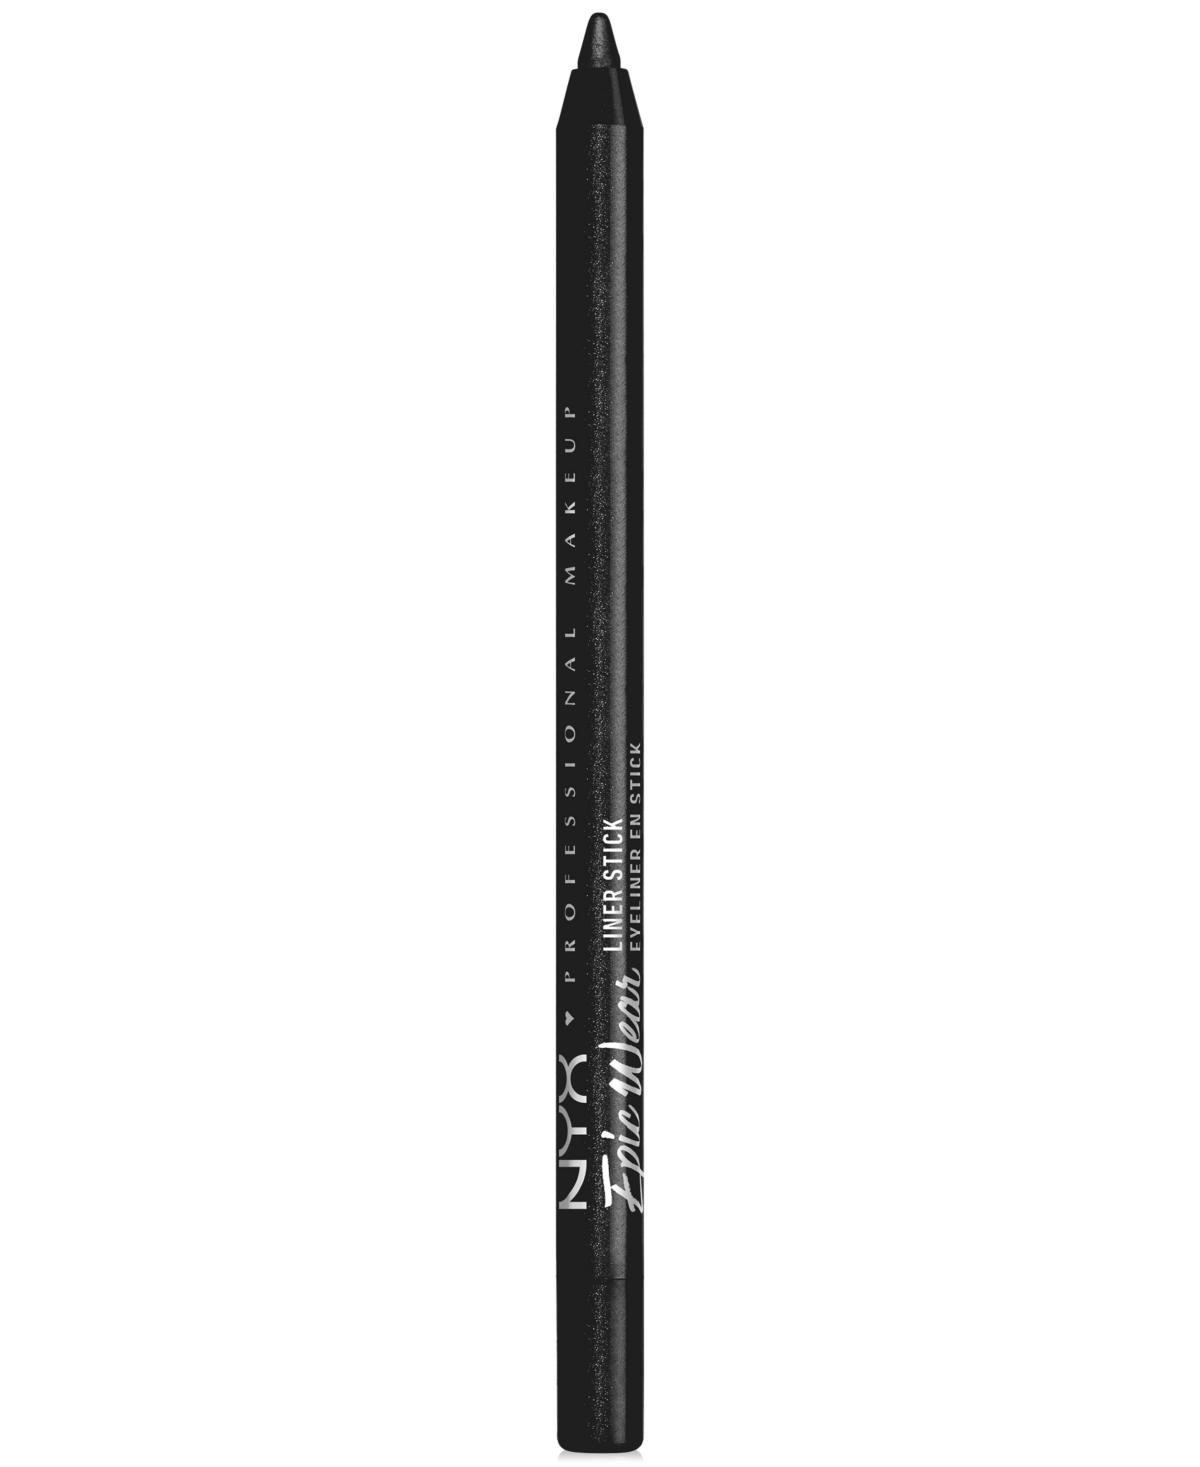 Epic Wear Liner Stick Long Lasting Eyeliner Pencil - Burnt Sienna